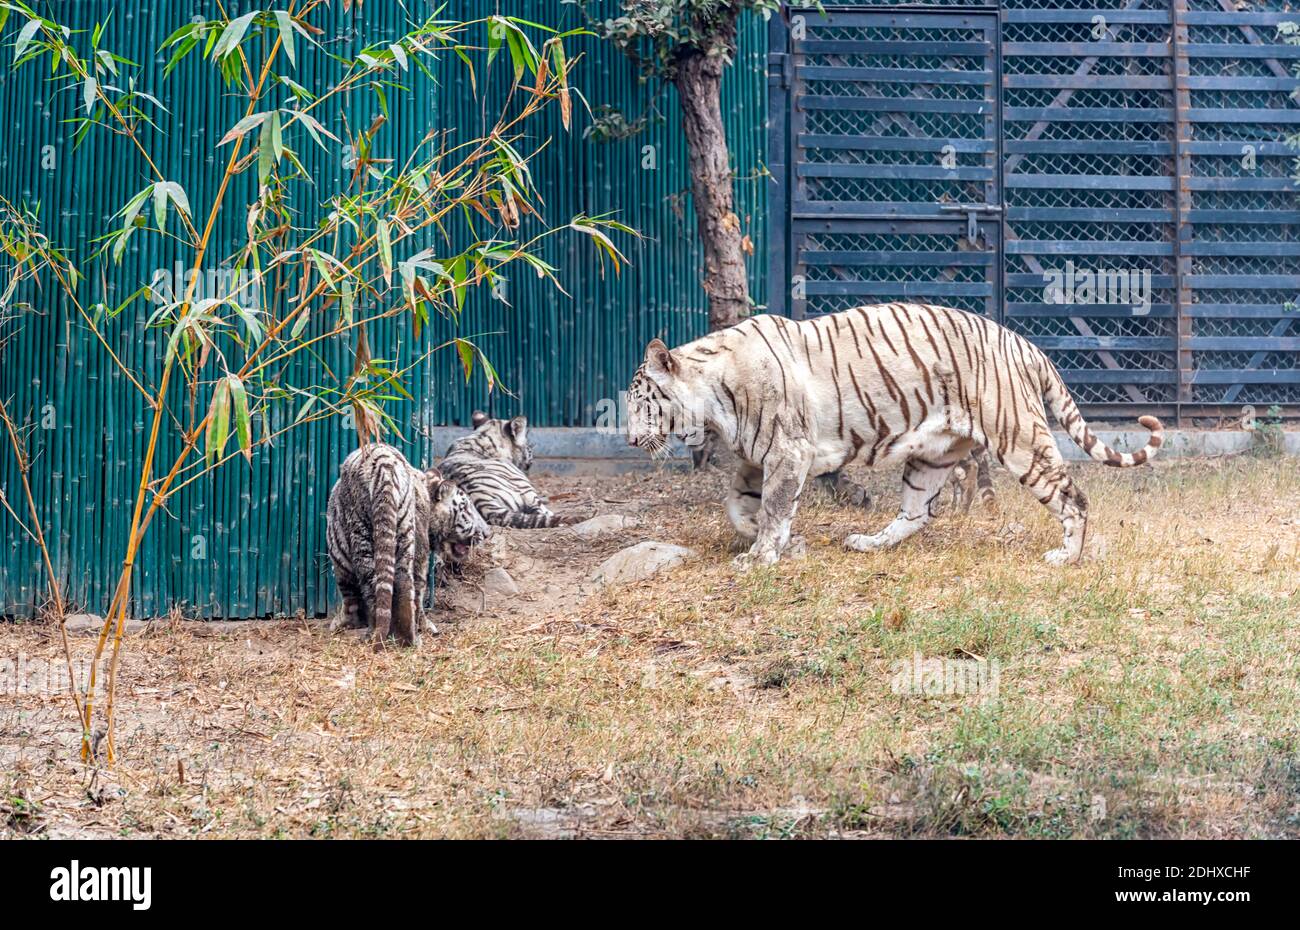 Une femme tigre blanc jouant avec ses petits dans l'enceinte du tigre au parc zoologique national de Delhi, également connu sous le nom de zoo de Delhi. Banque D'Images